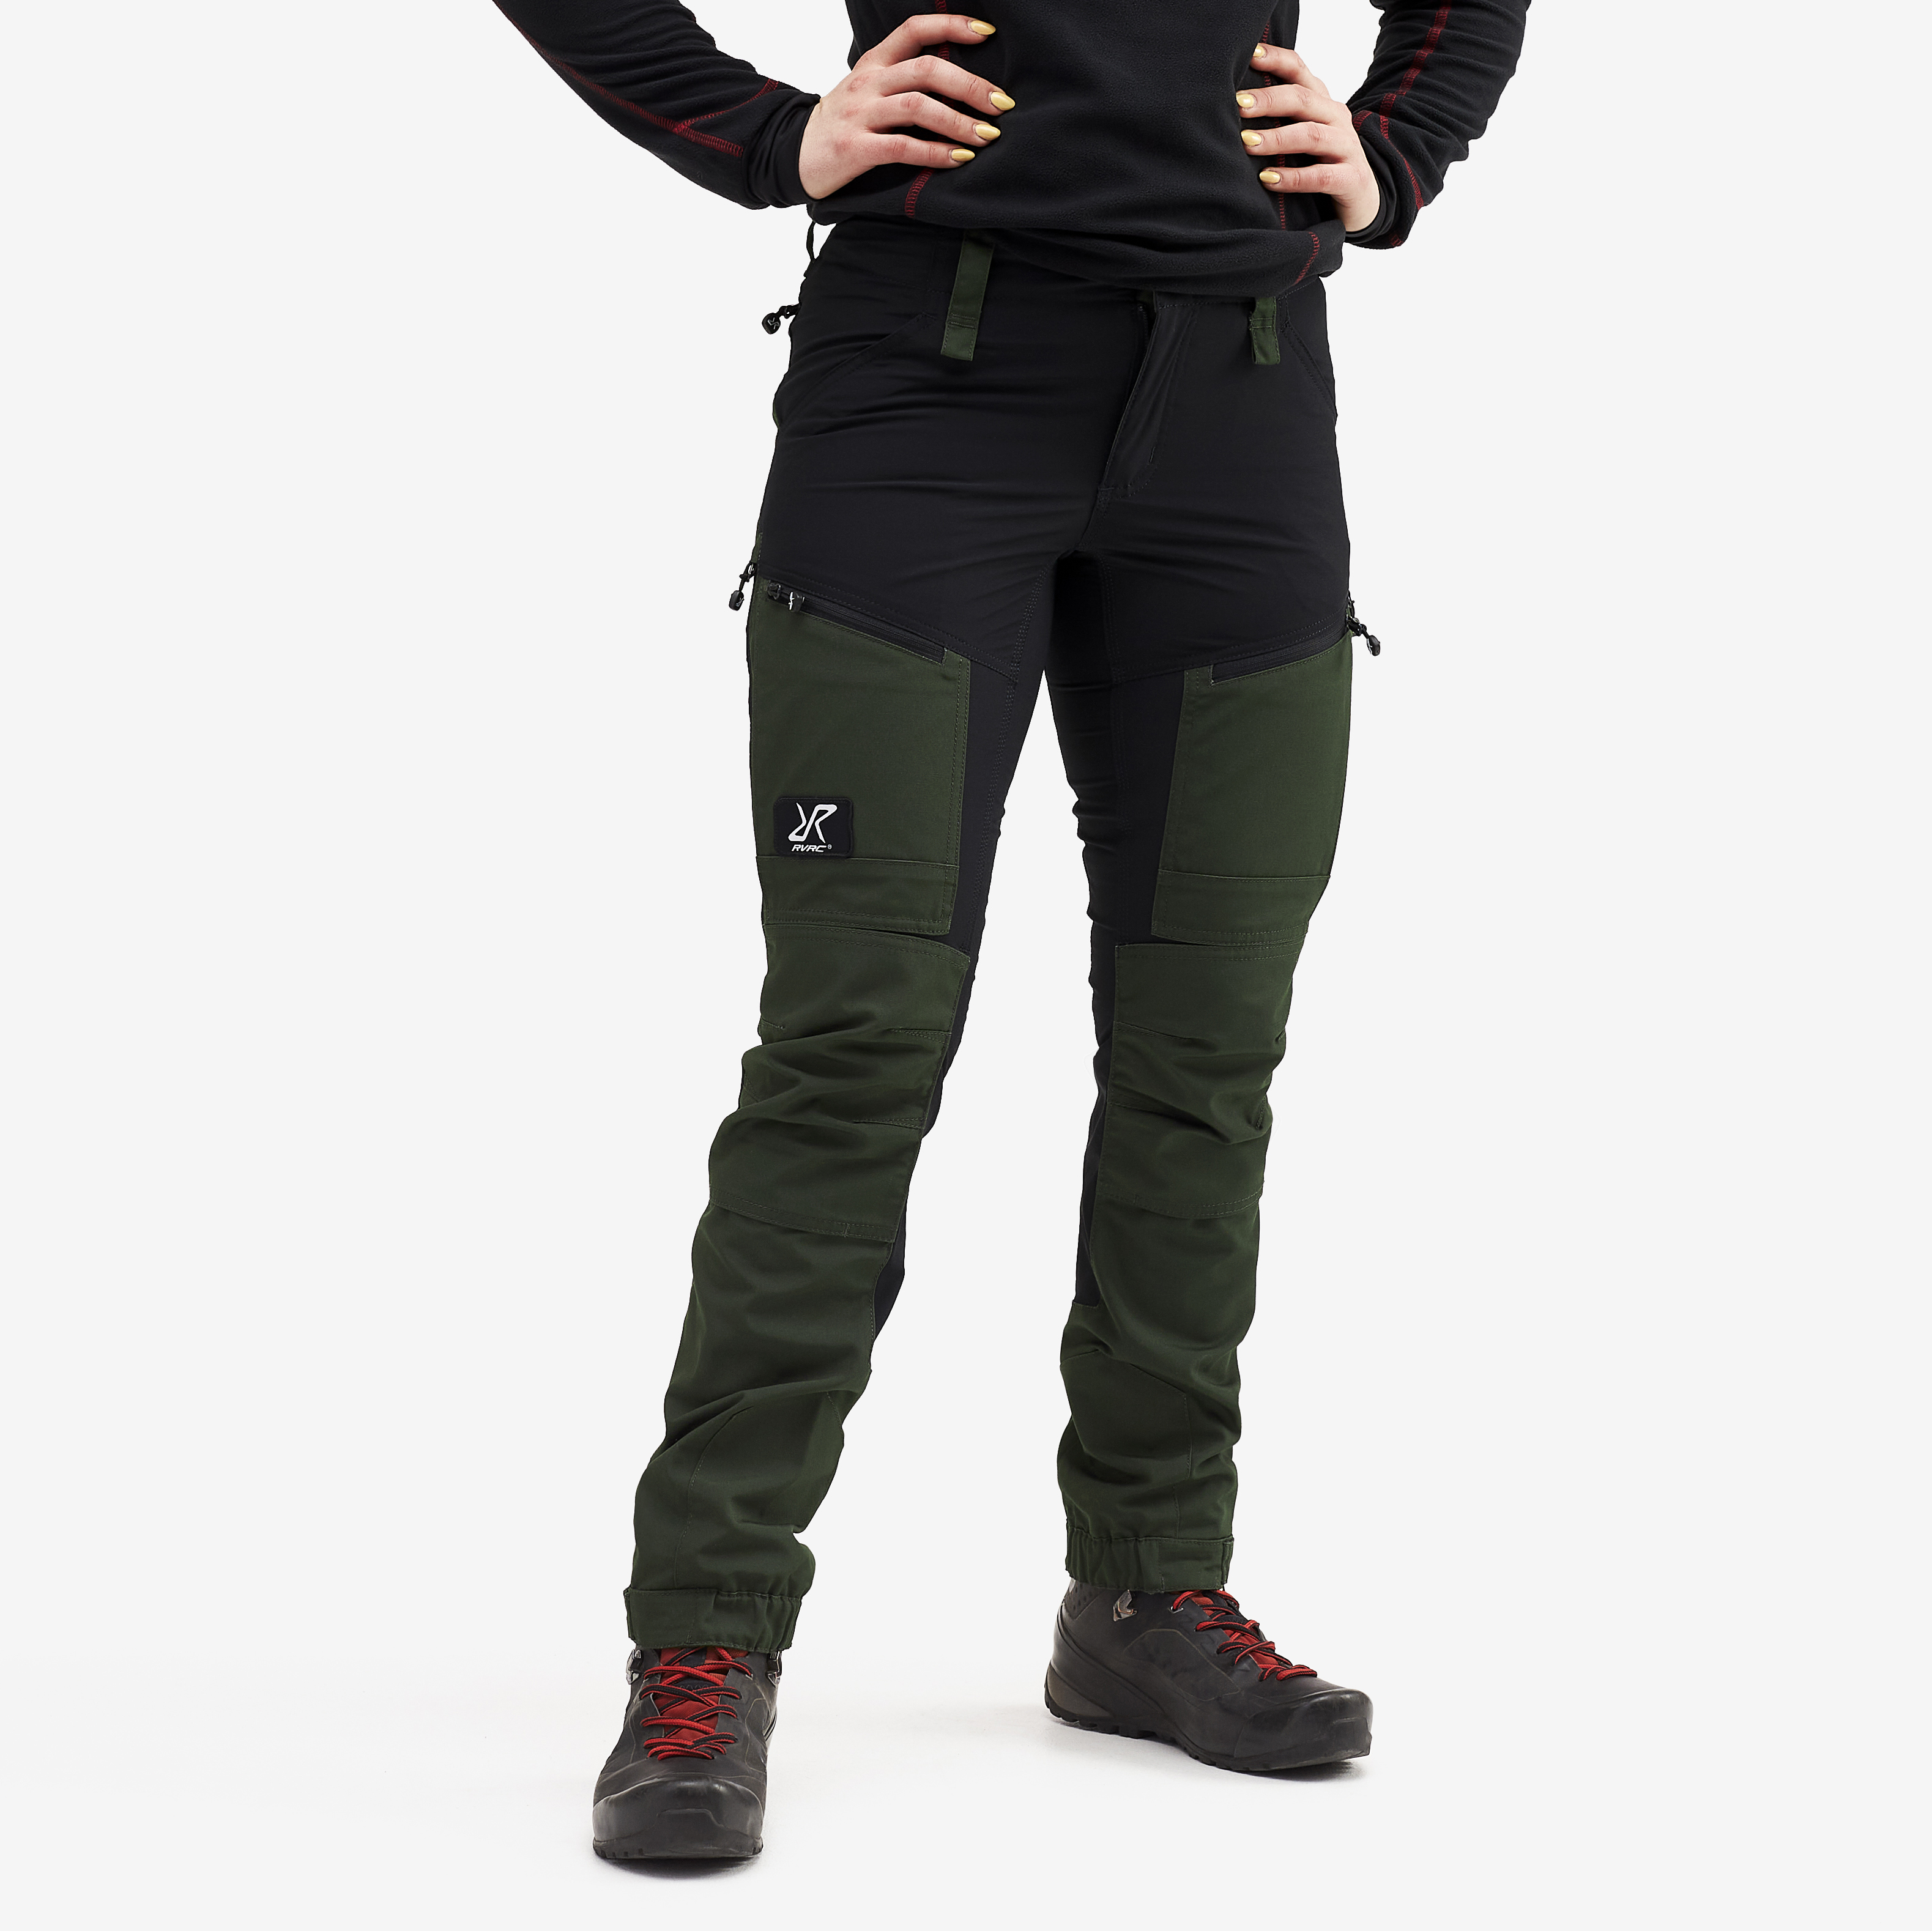 RVRC GP Pro Short spodnie trekkingowe damskie zielony